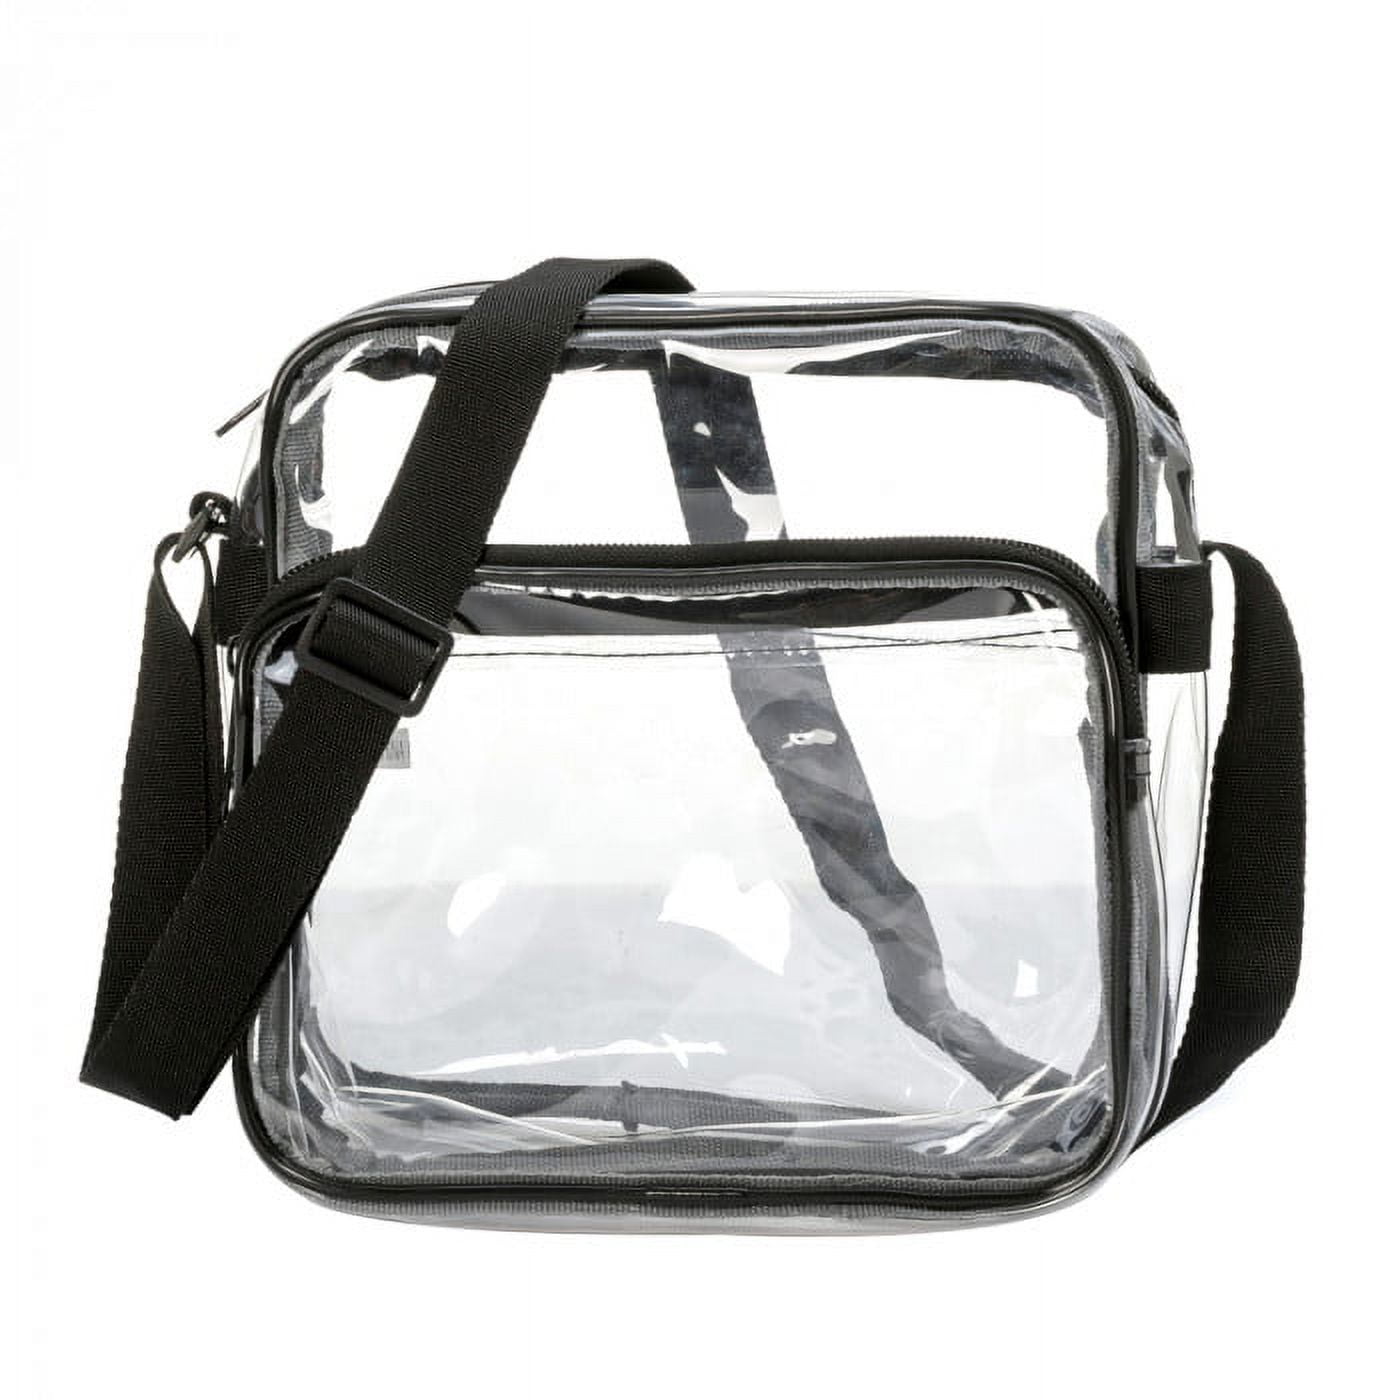 VANZACK 2 pcs Bag rain Cover Clear Tote Handbag Transparent Tote Bag Trendy  Handbags Rainproof Handb…See more VANZACK 2 pcs Bag rain Cover Clear Tote